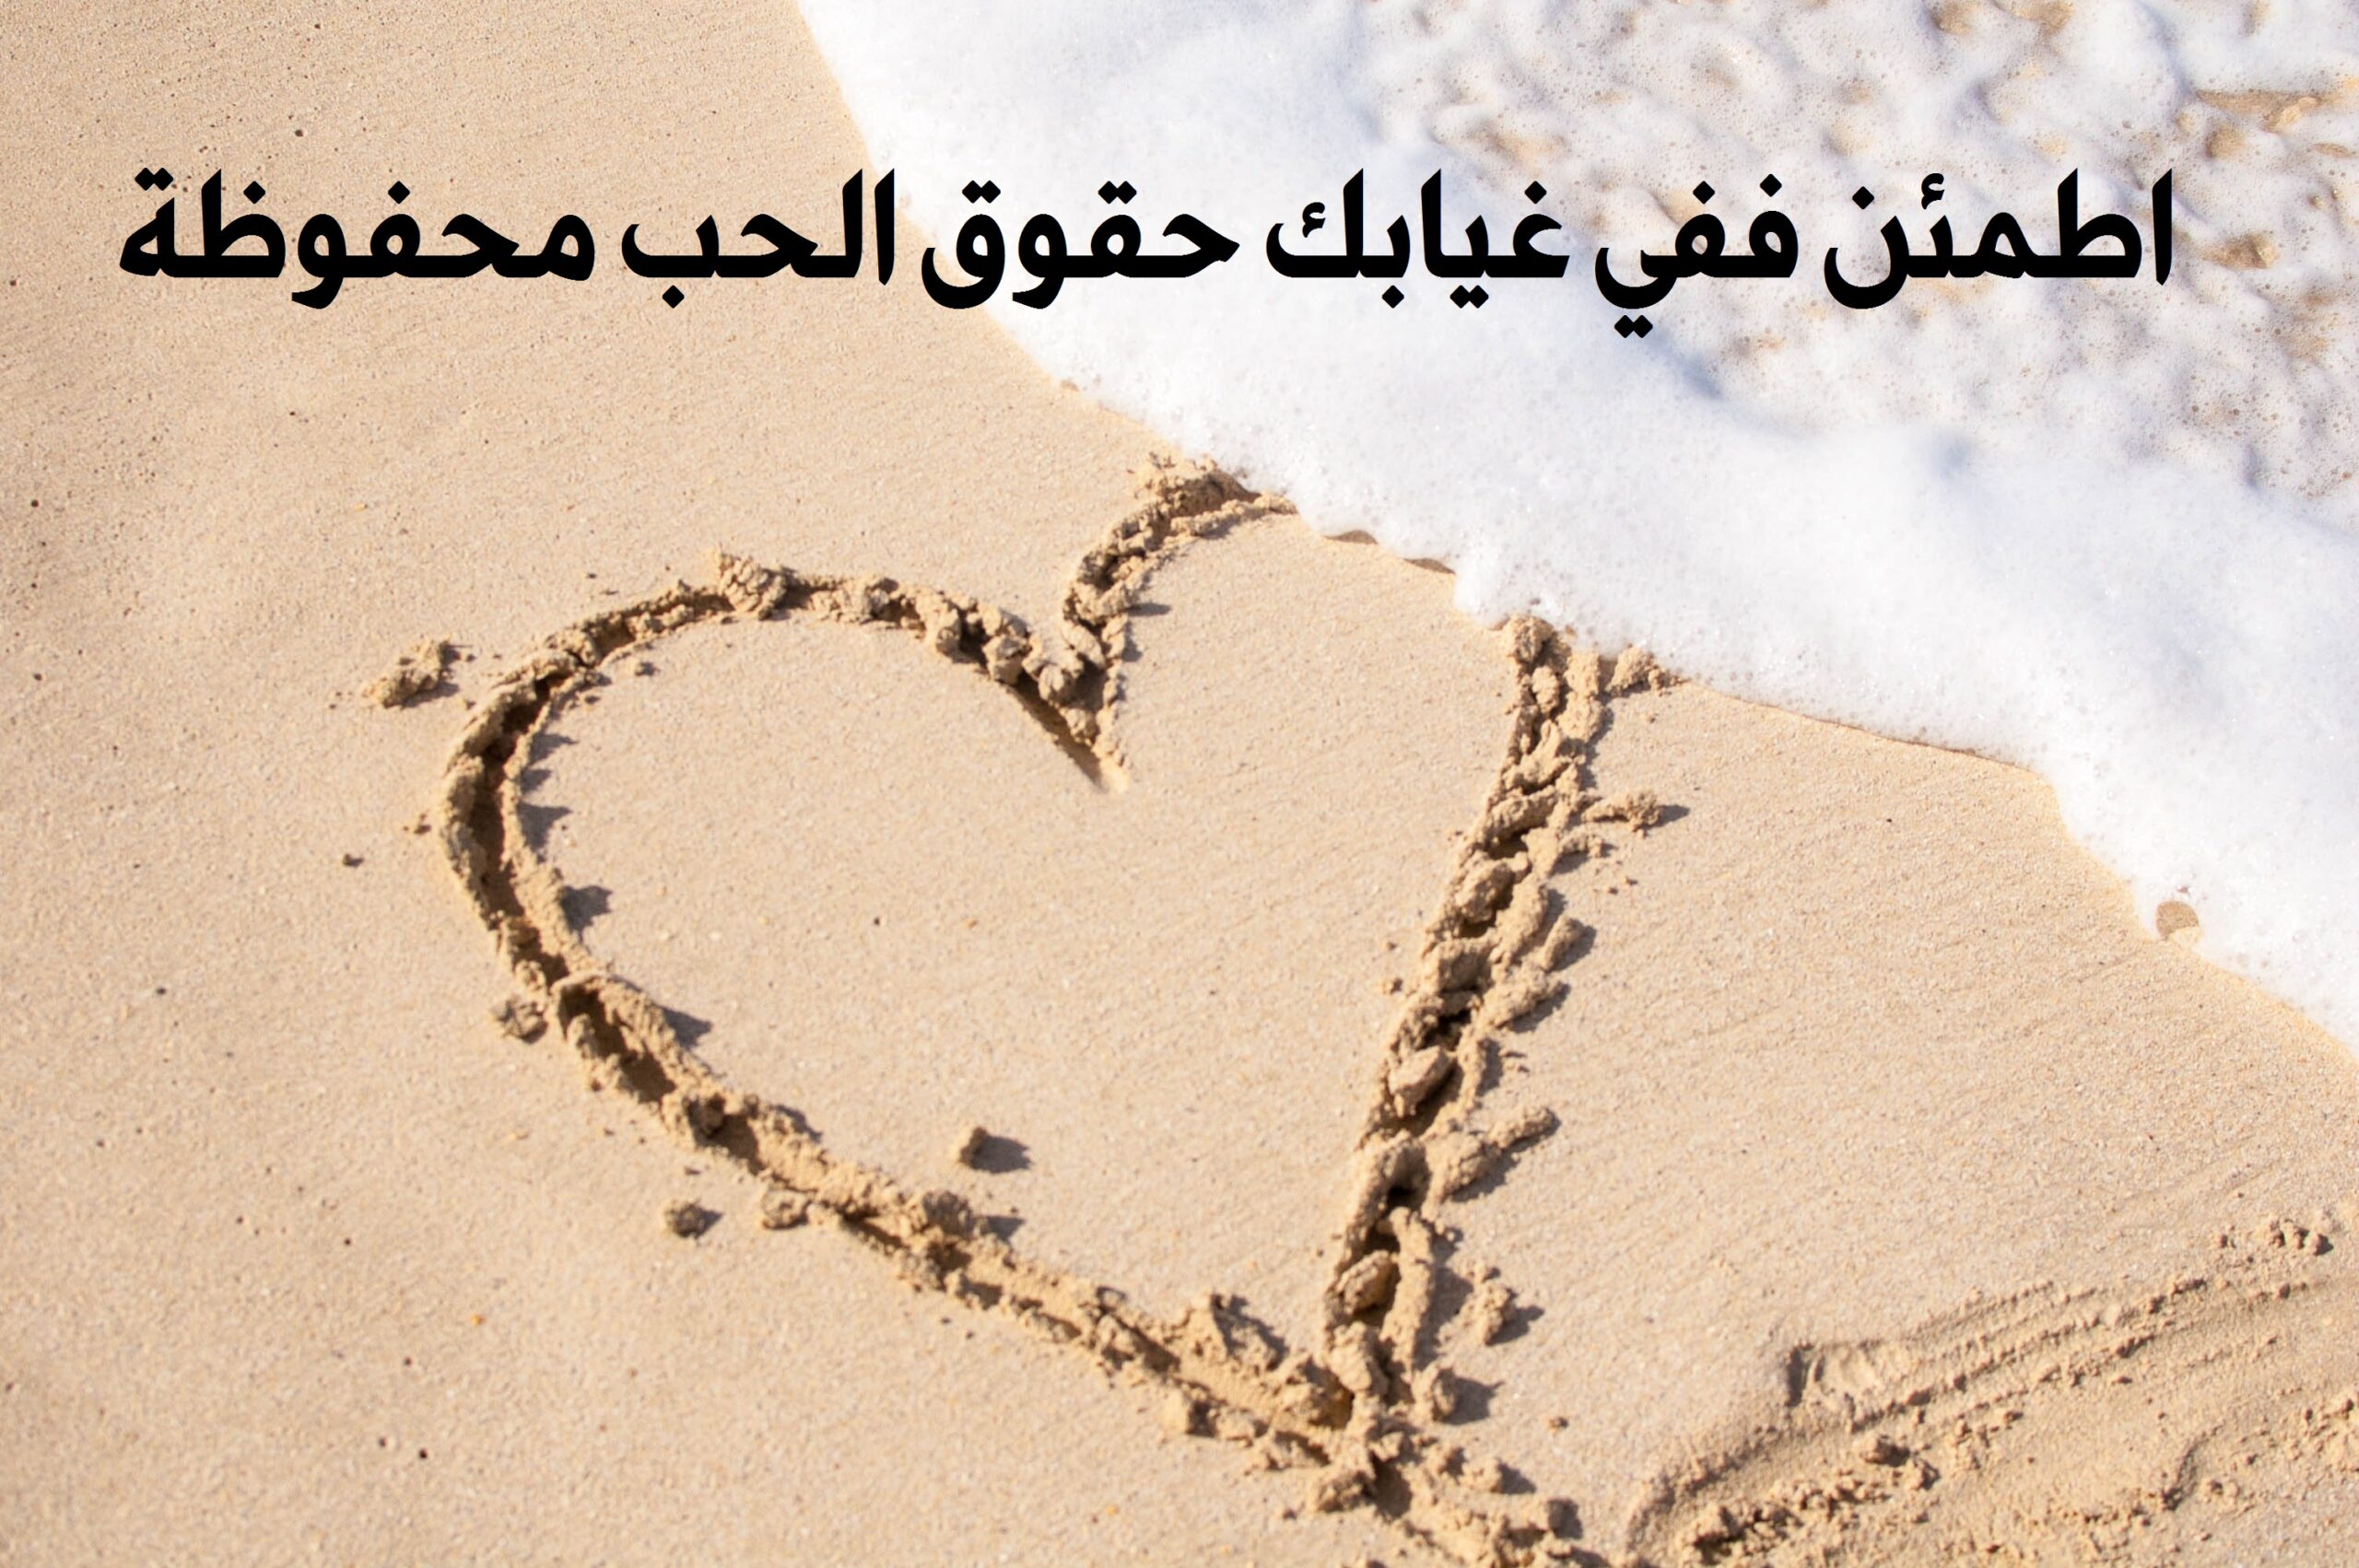 صورة جميلة لقلب مرسوم علي الرمال مكتوب عليها اطمئن ففي غيابك حقوق الحب محفوظة